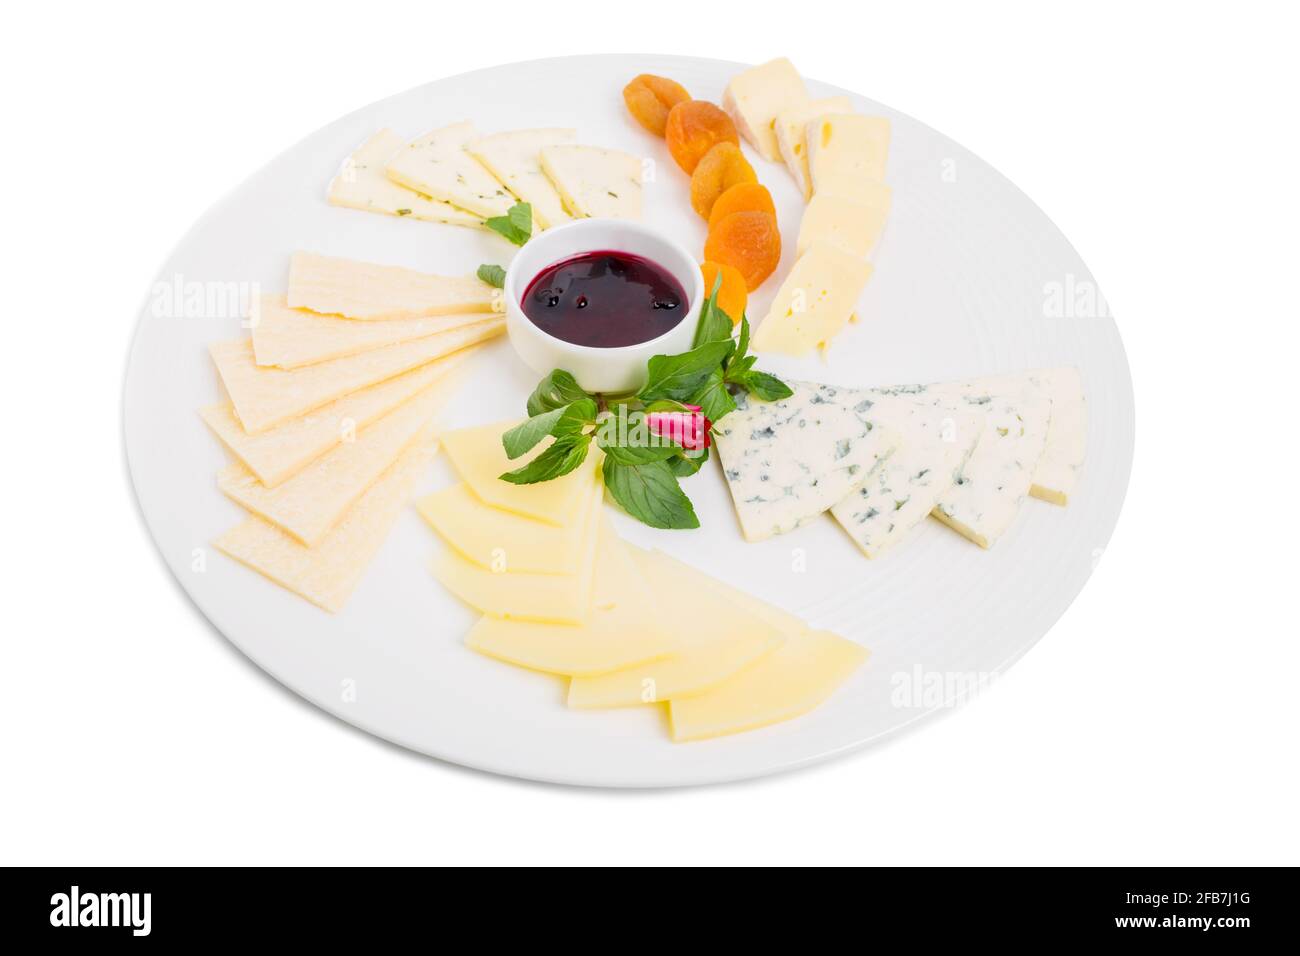 Délicieux plateau de fromages italiens avec abricots séchés et sauce aux baies sucrées. Isolé sur un fond blanc. Banque D'Images